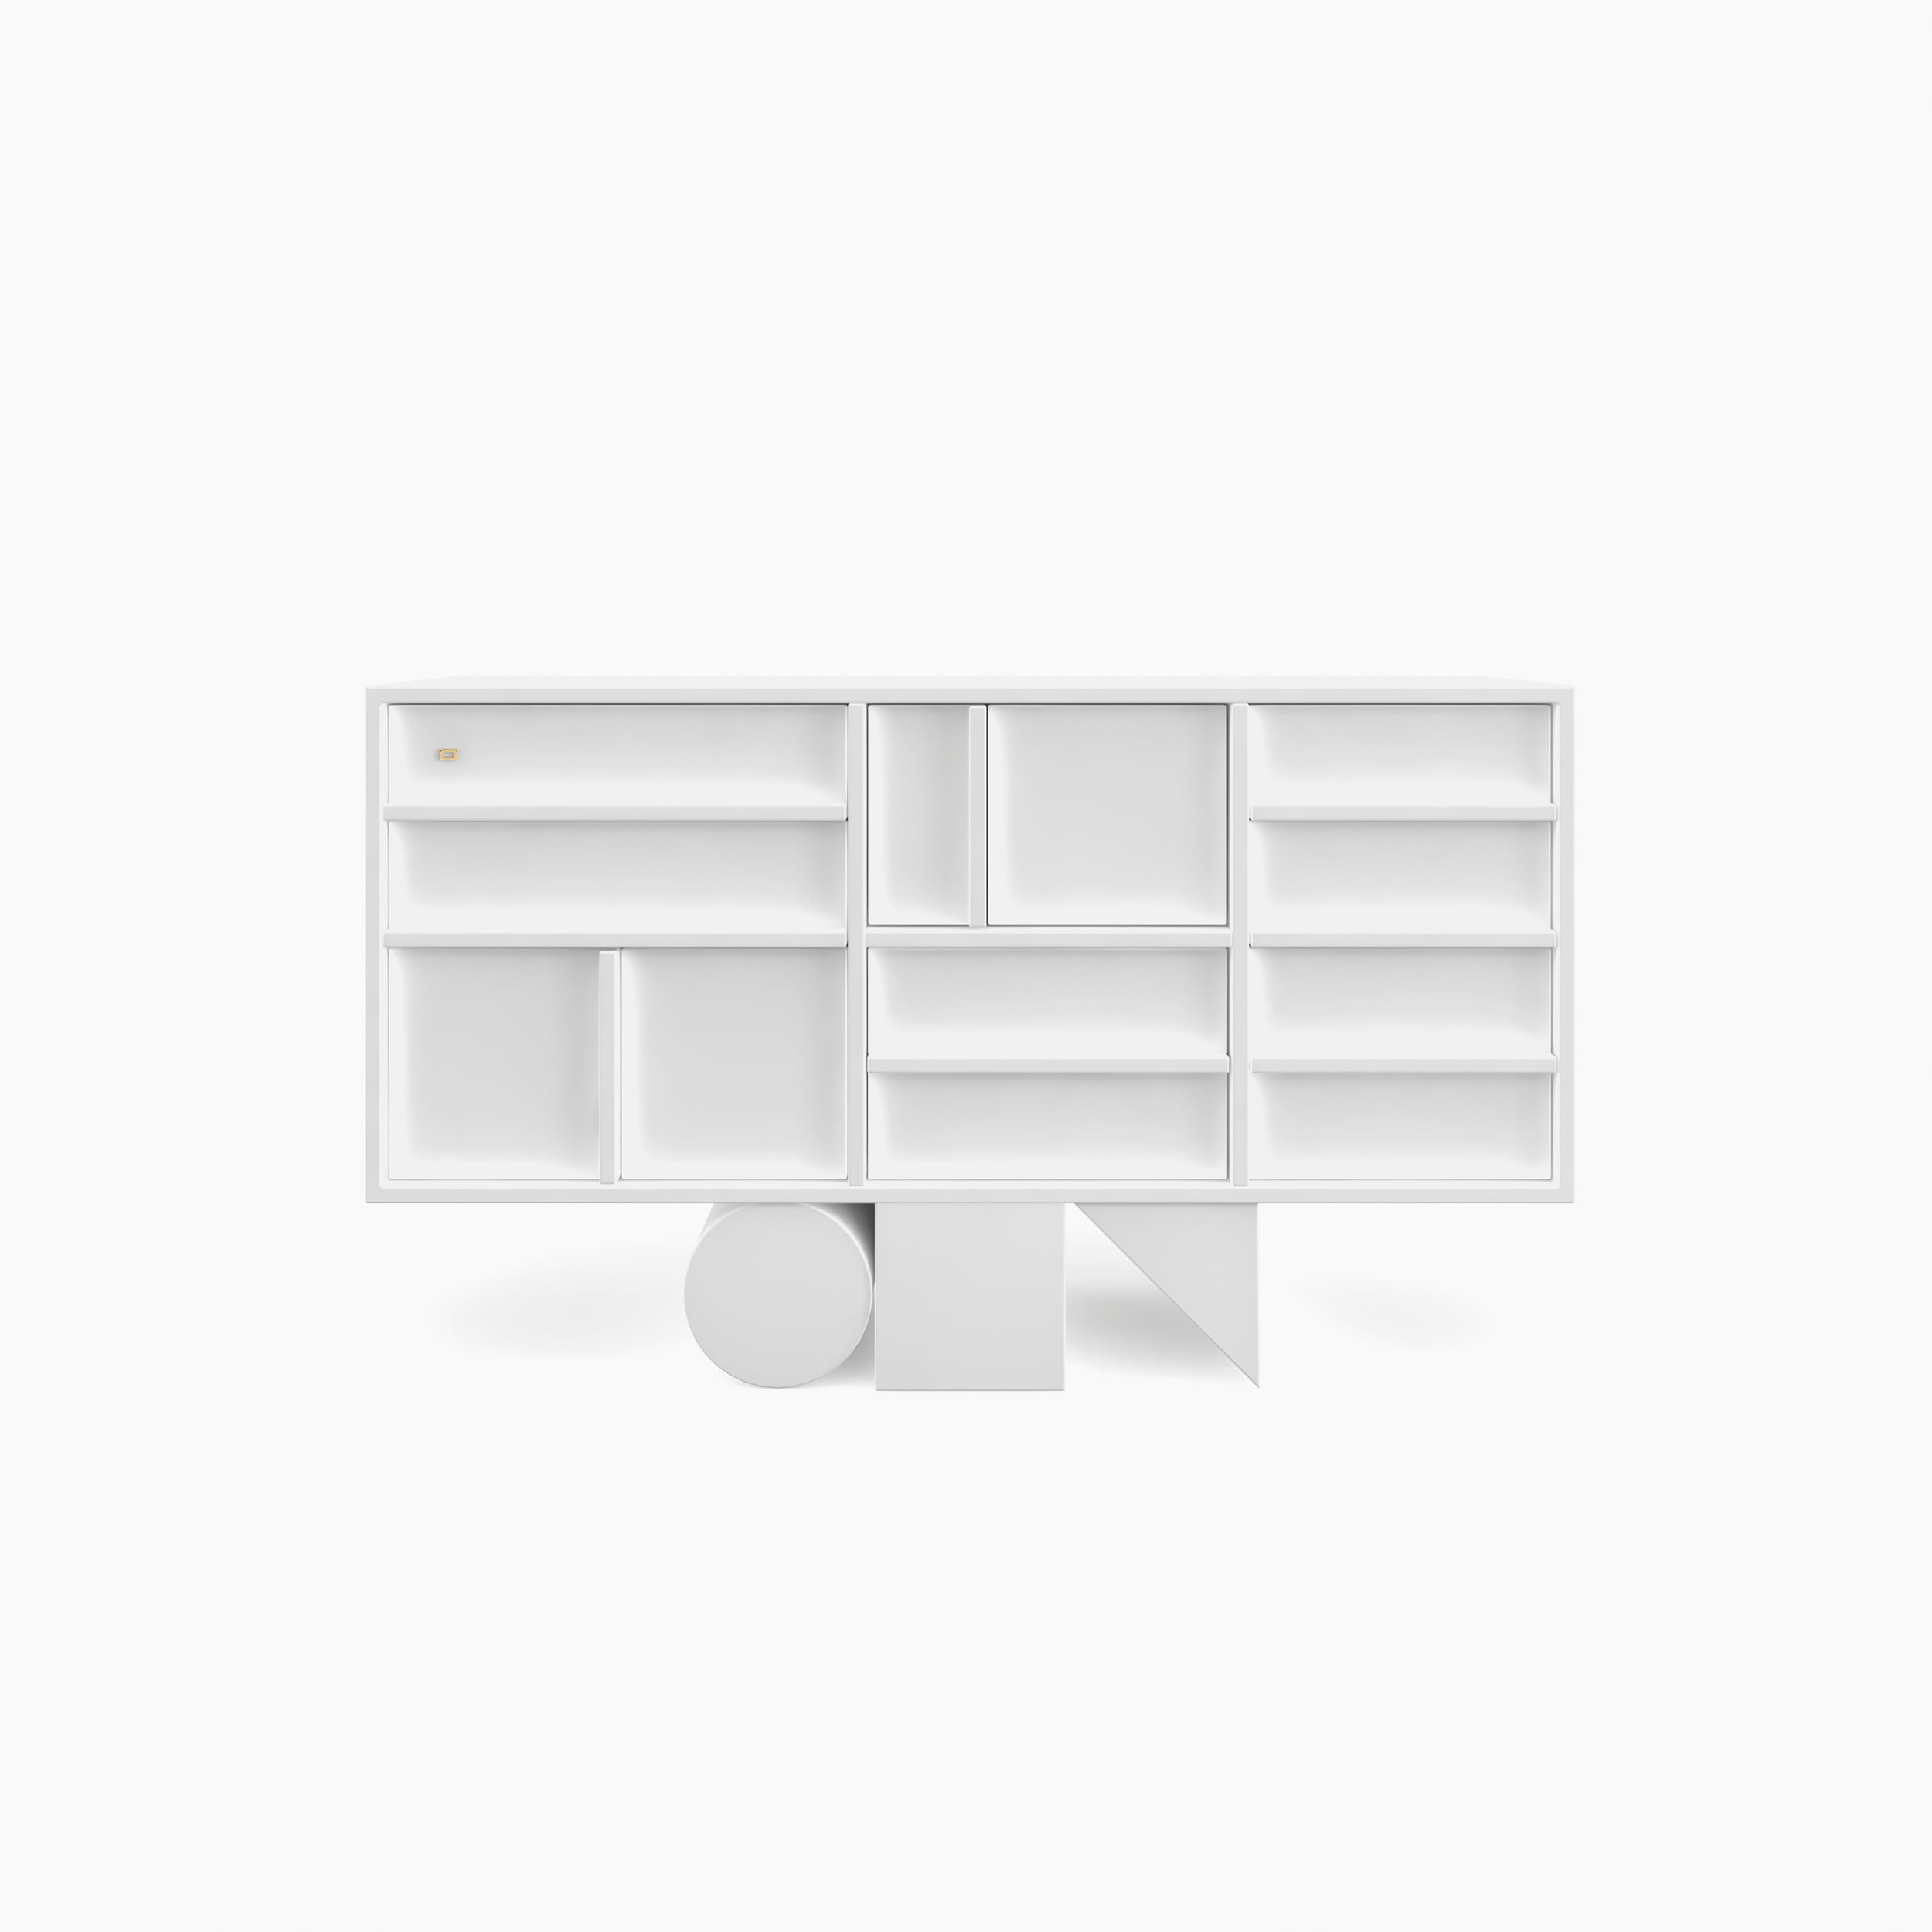 Sideboard wuerfel prisma zylinder weiss losangeles design Buero purist furniture Sideboards FS 13 FELIX SCHWAKE